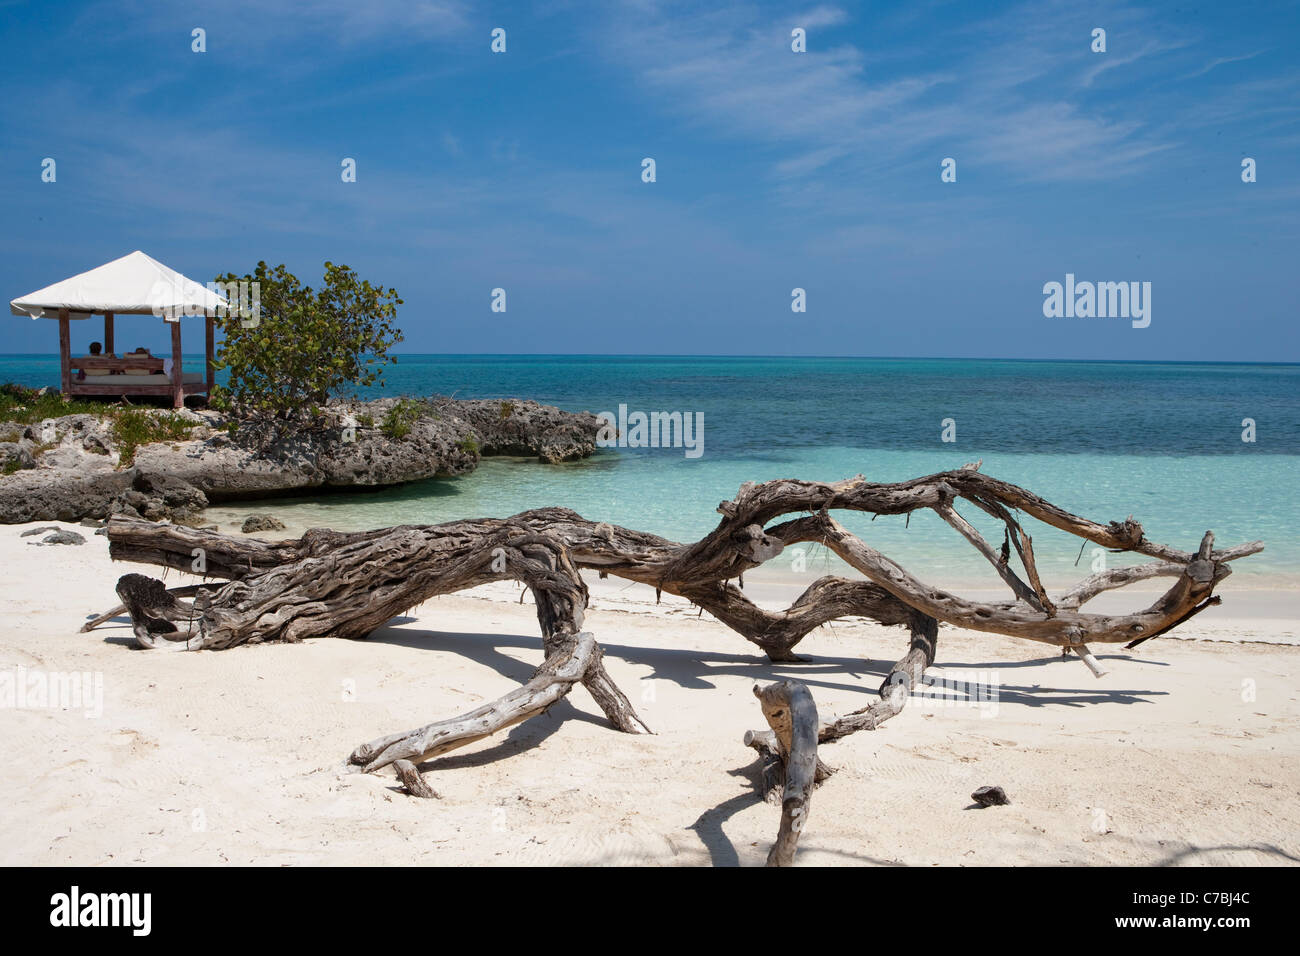 Bois flotté sur la plage et beach pavilion, le Paradisus Rio de Oro resort, Playa Esmeralda, Guardalavaca, Holguin, Cuba Banque D'Images